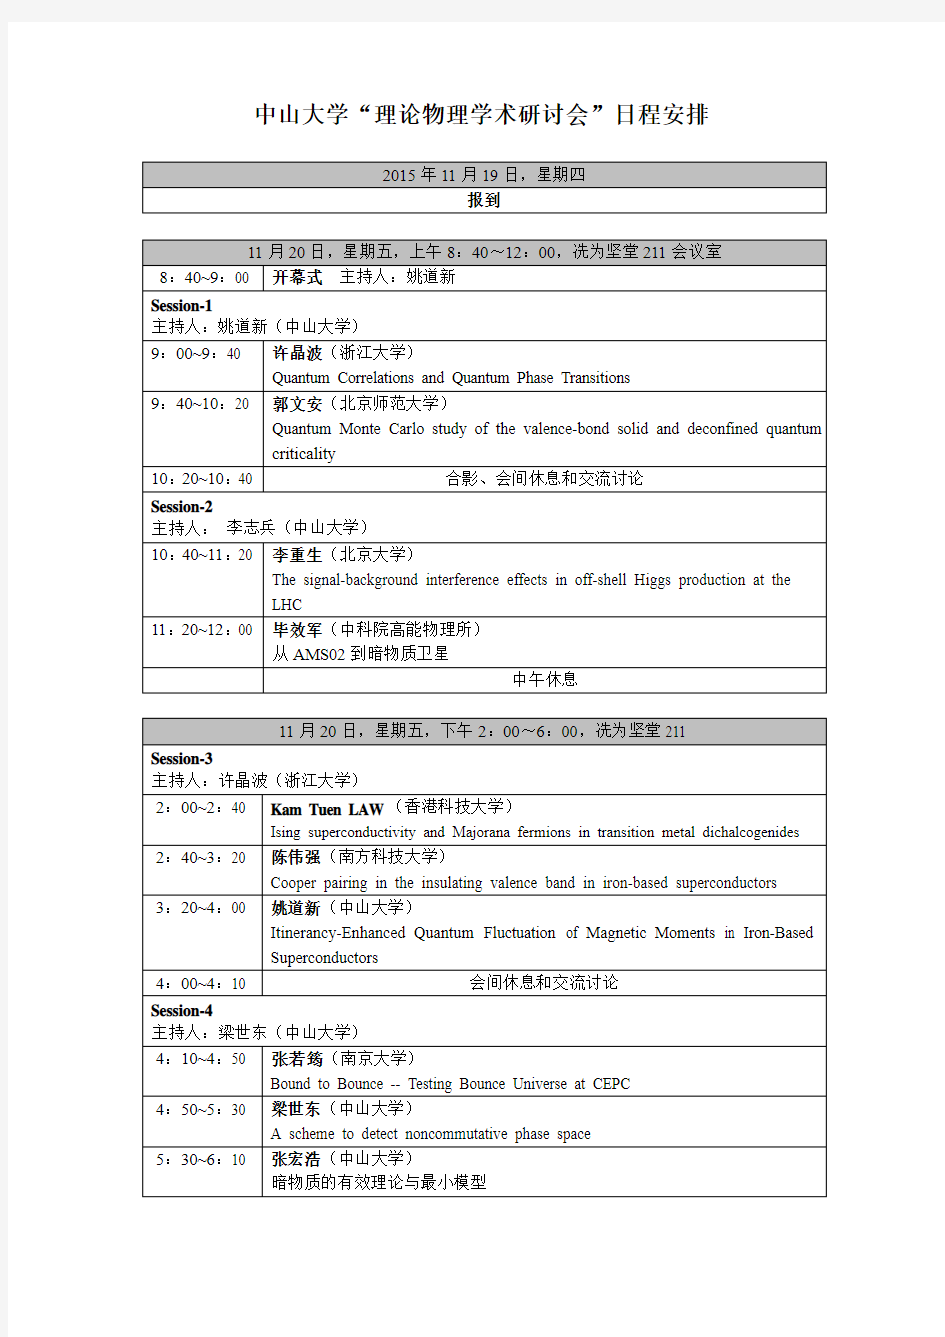 中山大学理论物理学术研讨会日程安排